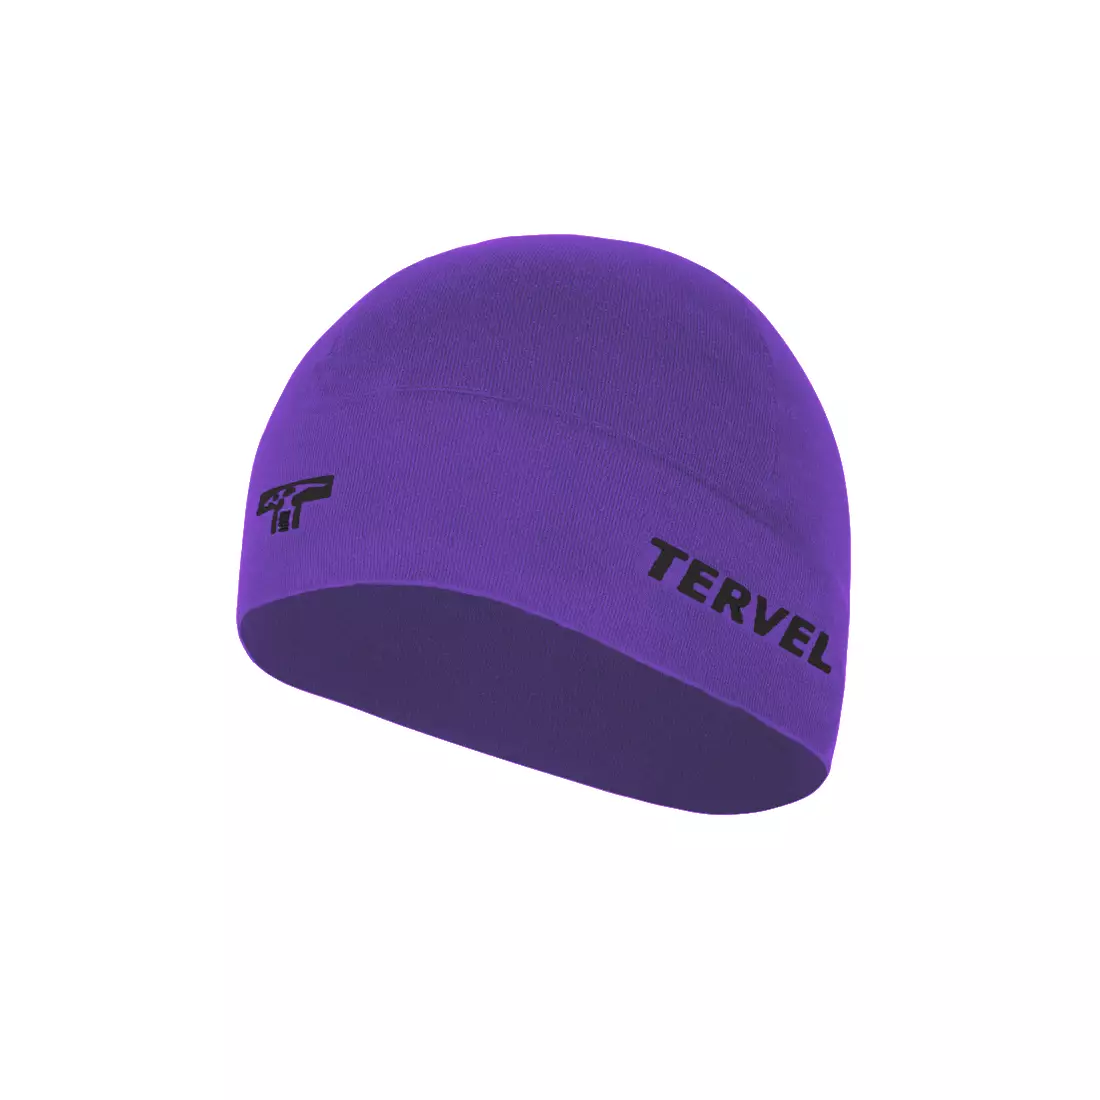 TERVEL 7001 - COMFORTLINE - șapcă de antrenament, culoare: Violet, mărime: Universal